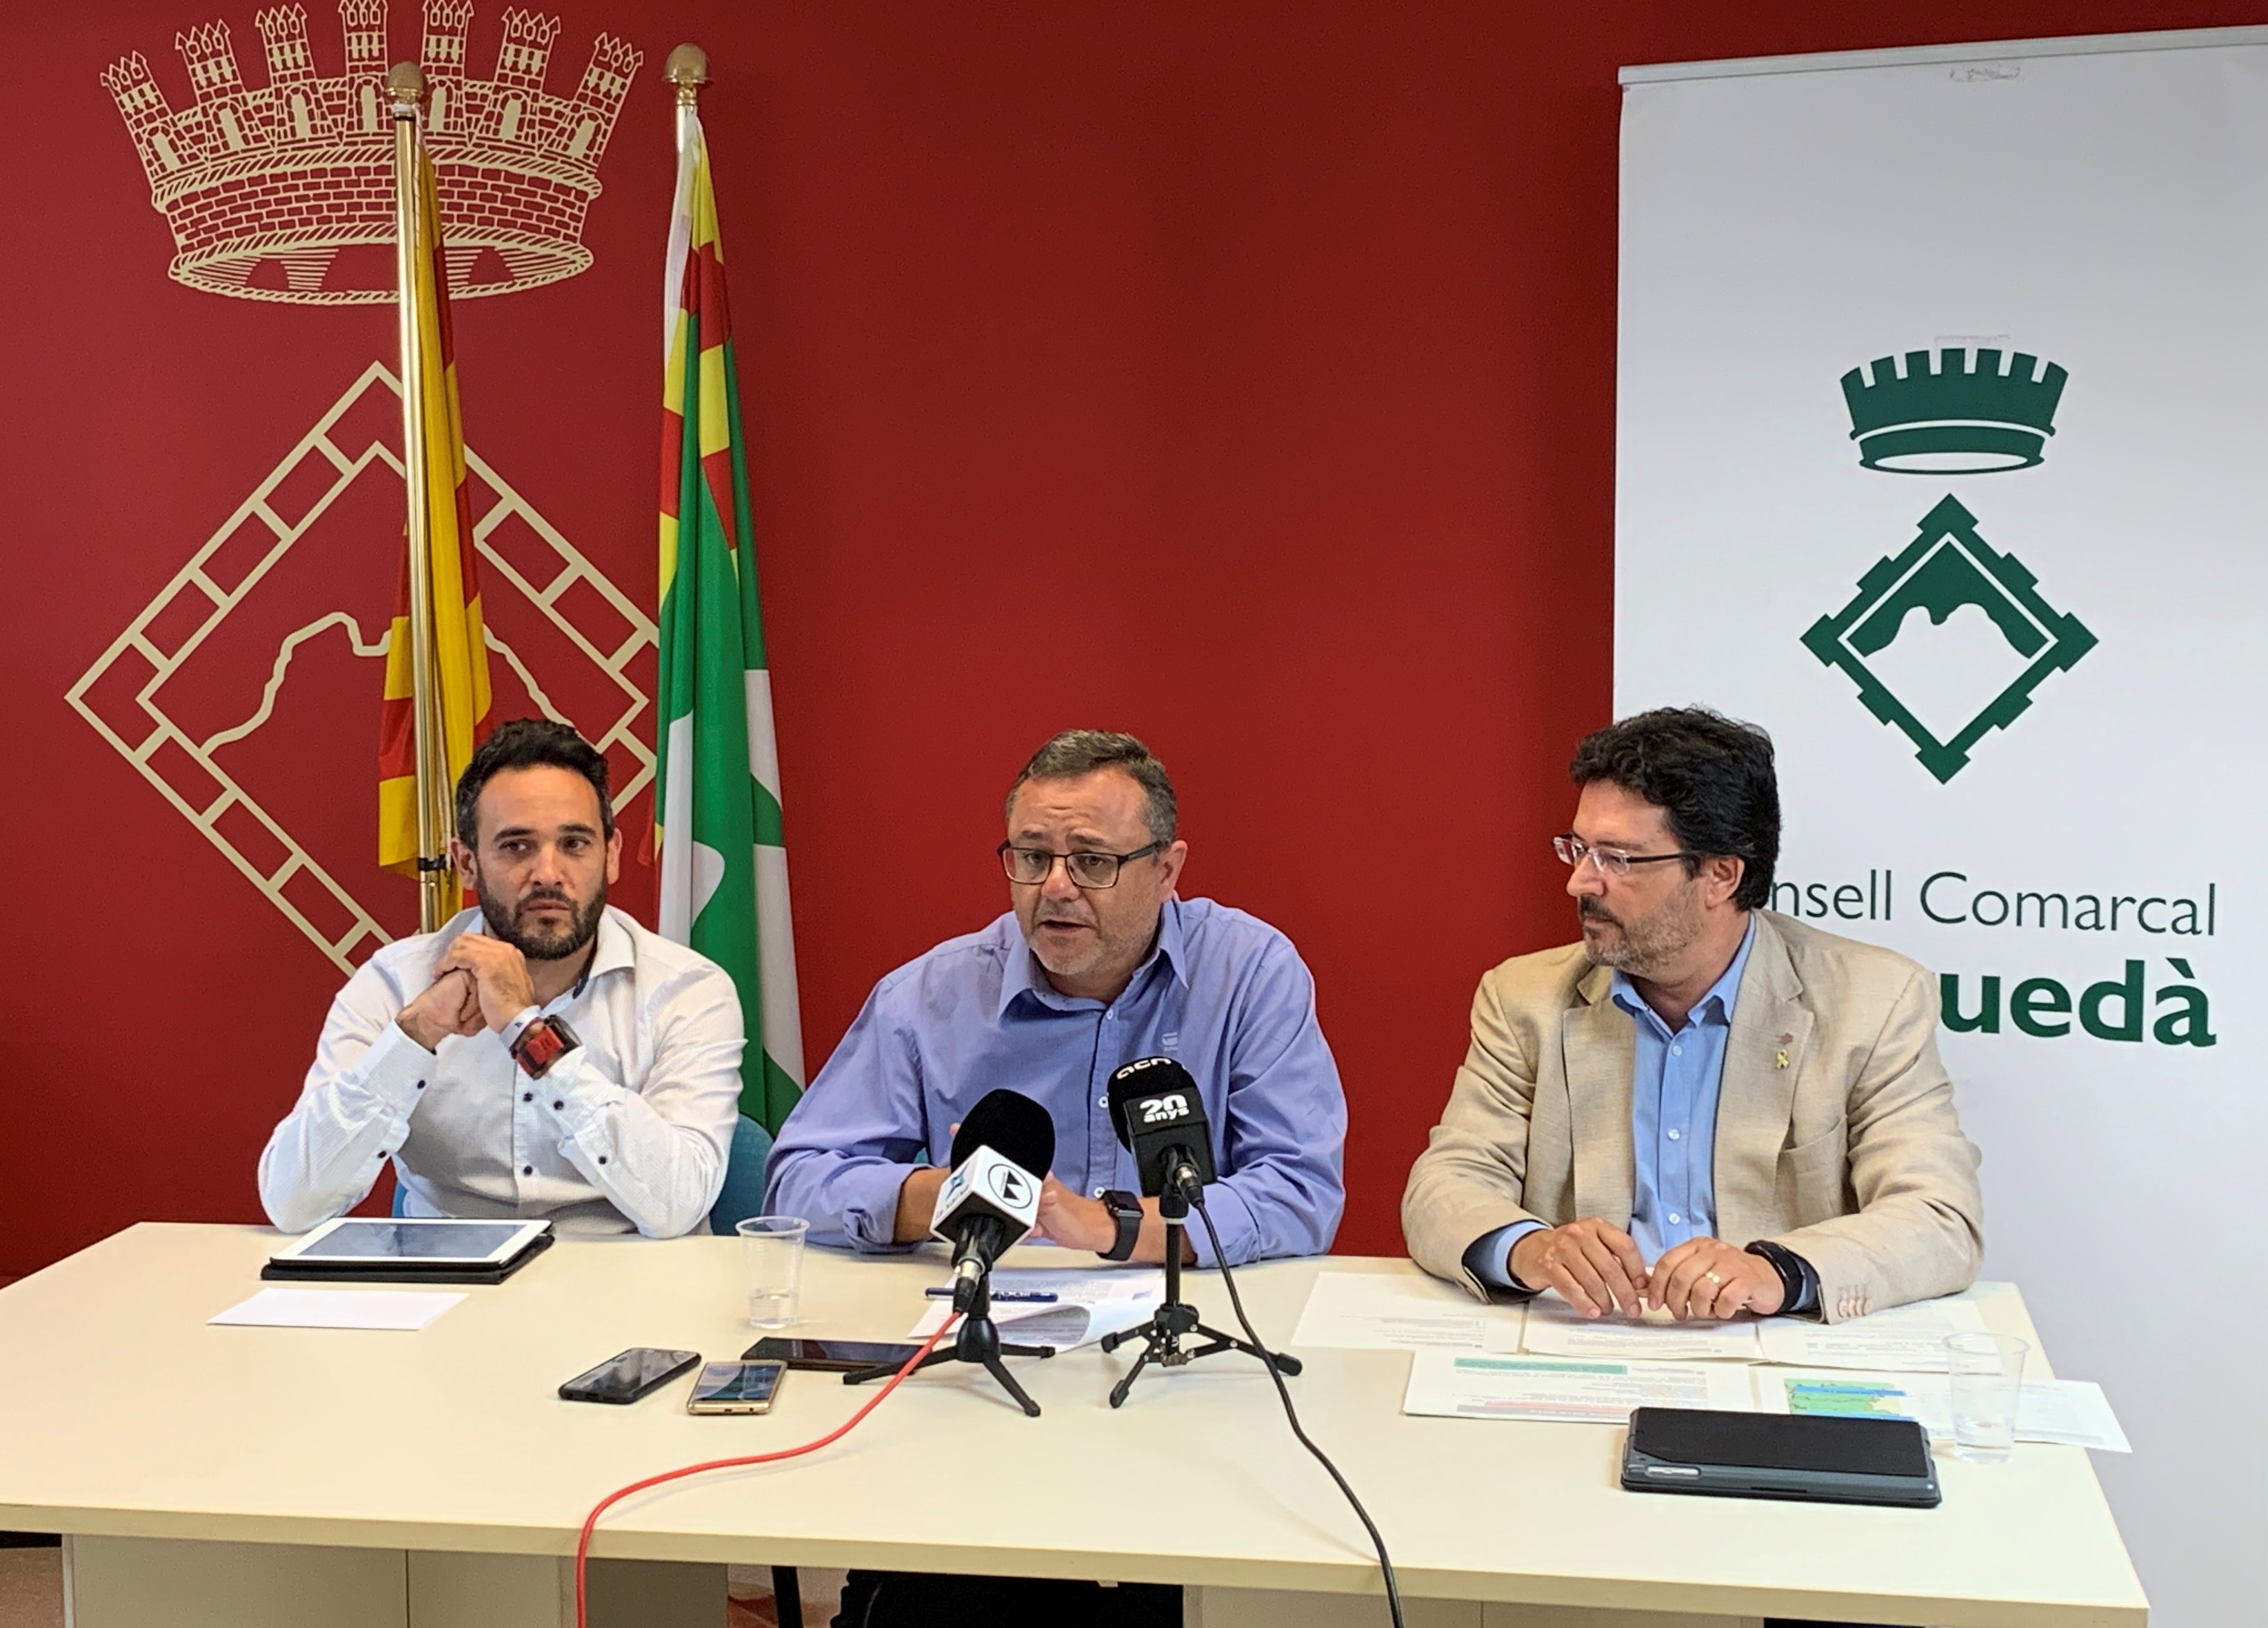 Presentació de les noves línies d'autobus | Consell Comarcal del Berguedà